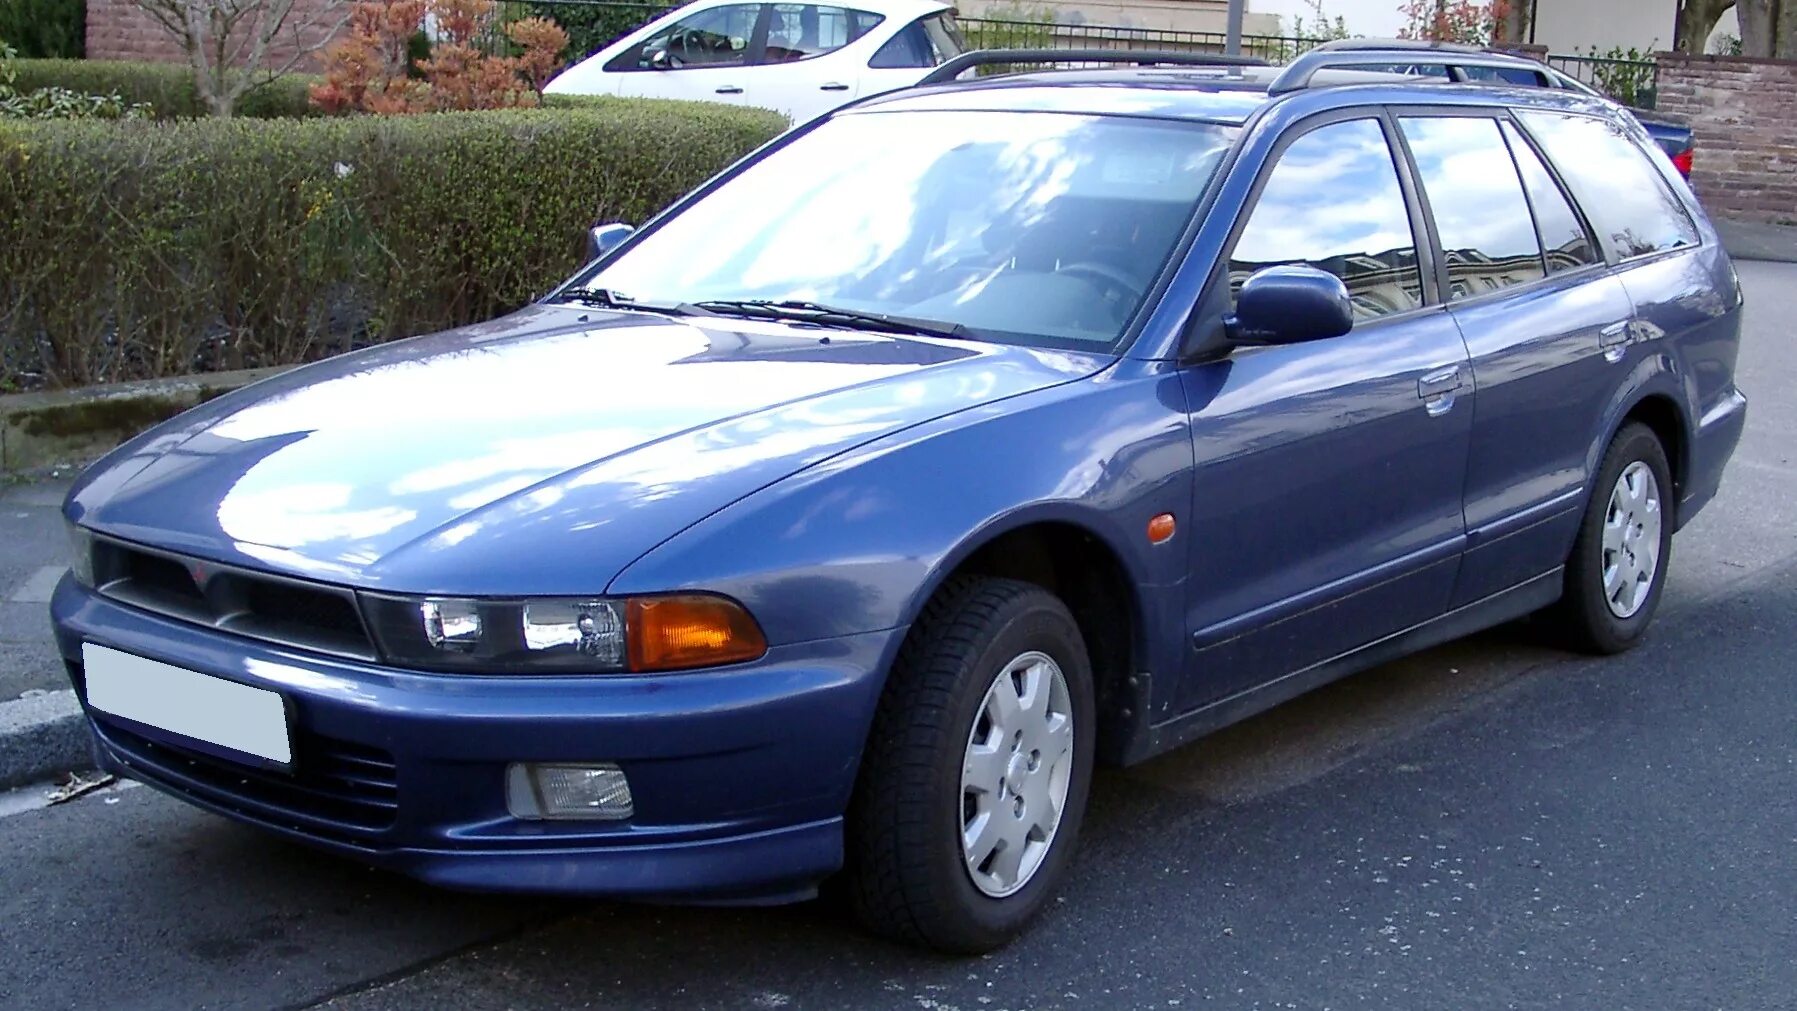 Мицубиси Галант 1997 универсал. Митсубиси Галант 1997. Mitsubishi Galant 1997 универсал. Мицубиси Галант 1998.